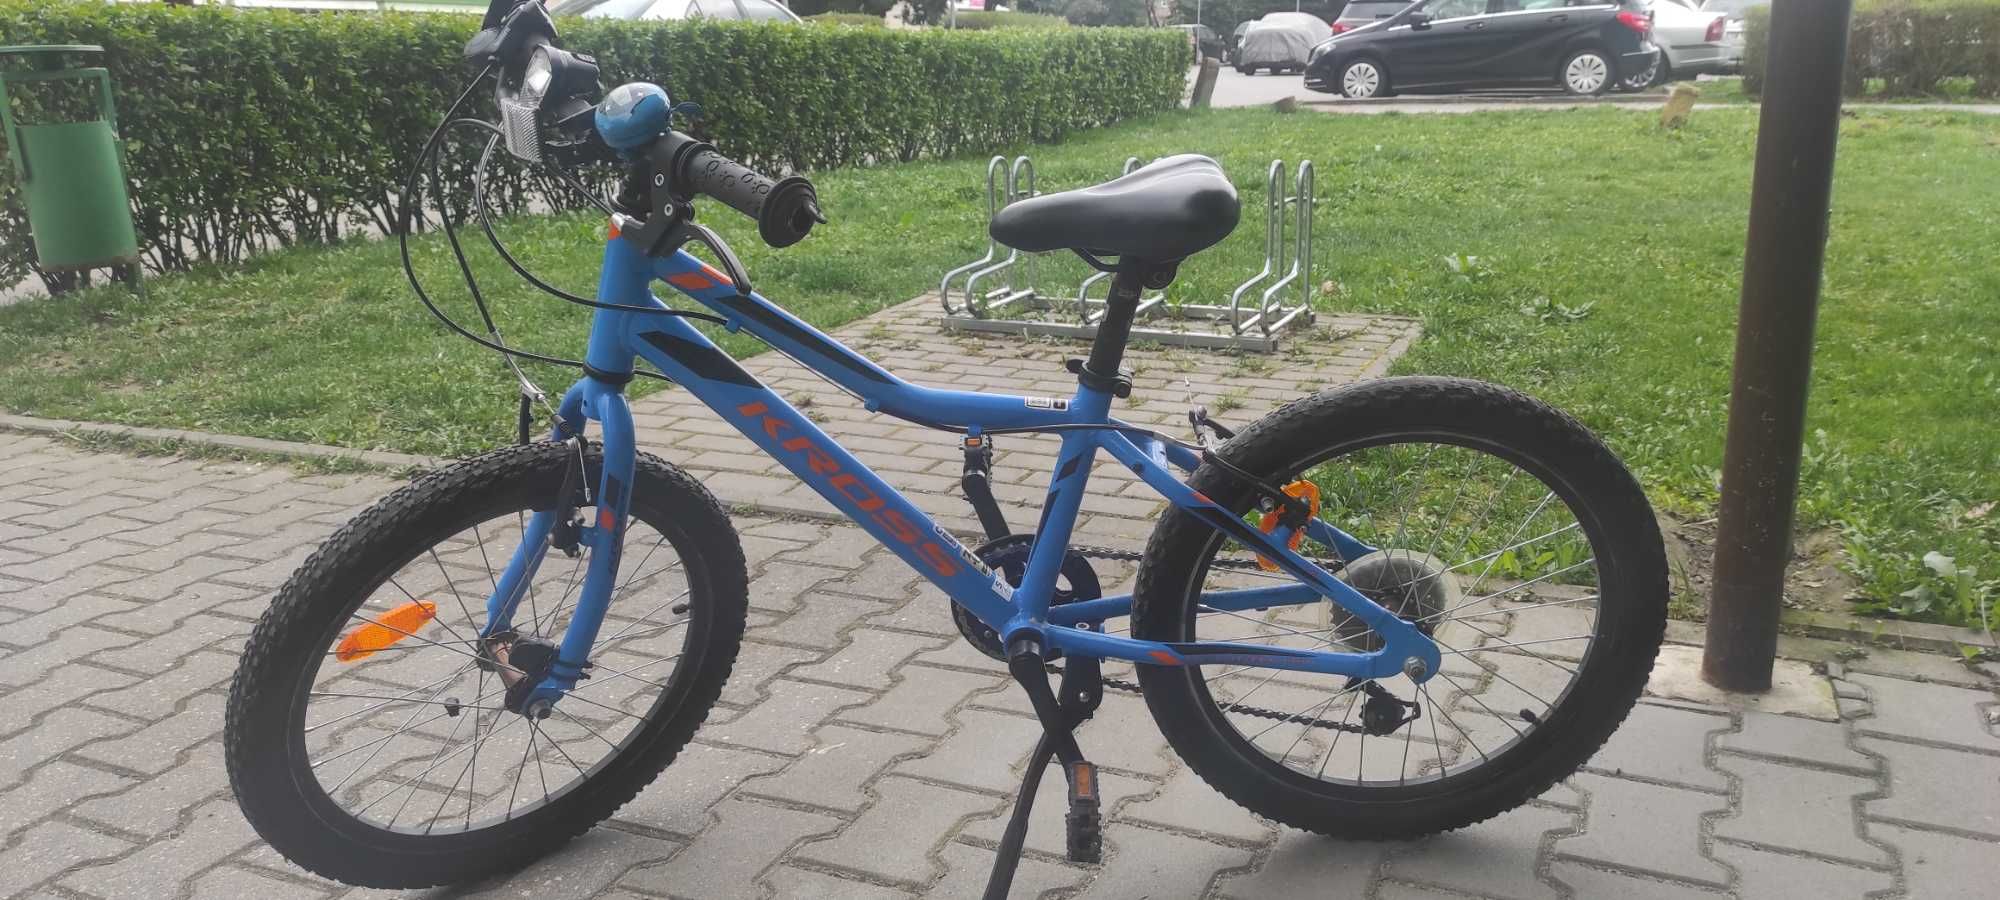 Sprzedam rower Kross 20 cali niebieski